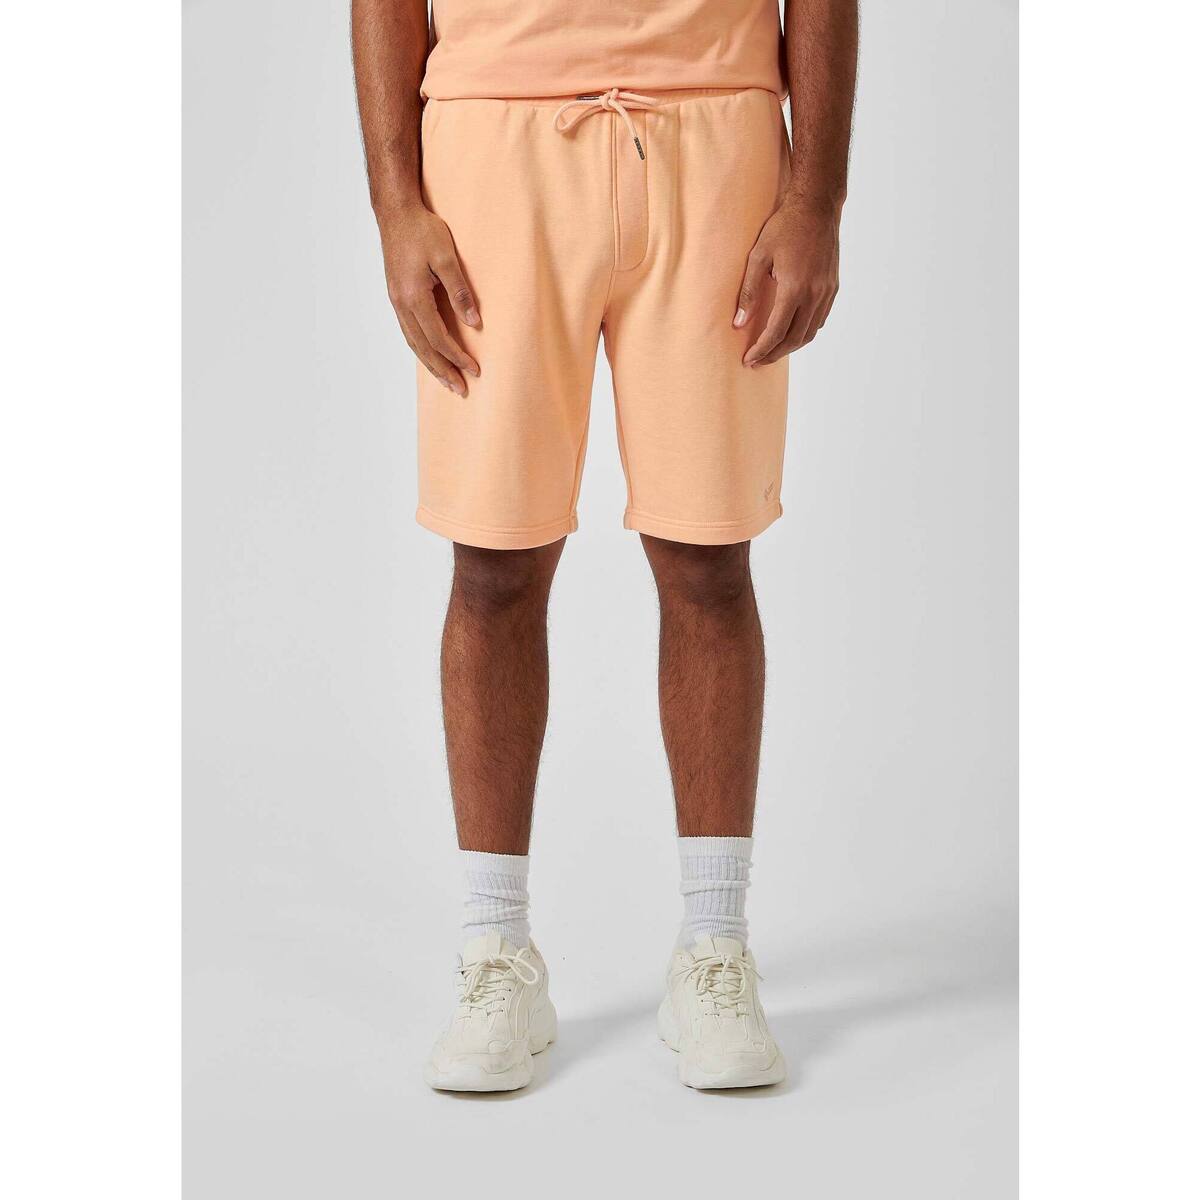 Vêtements Wide Shorts / Bermudas Kaporal BILO Orange